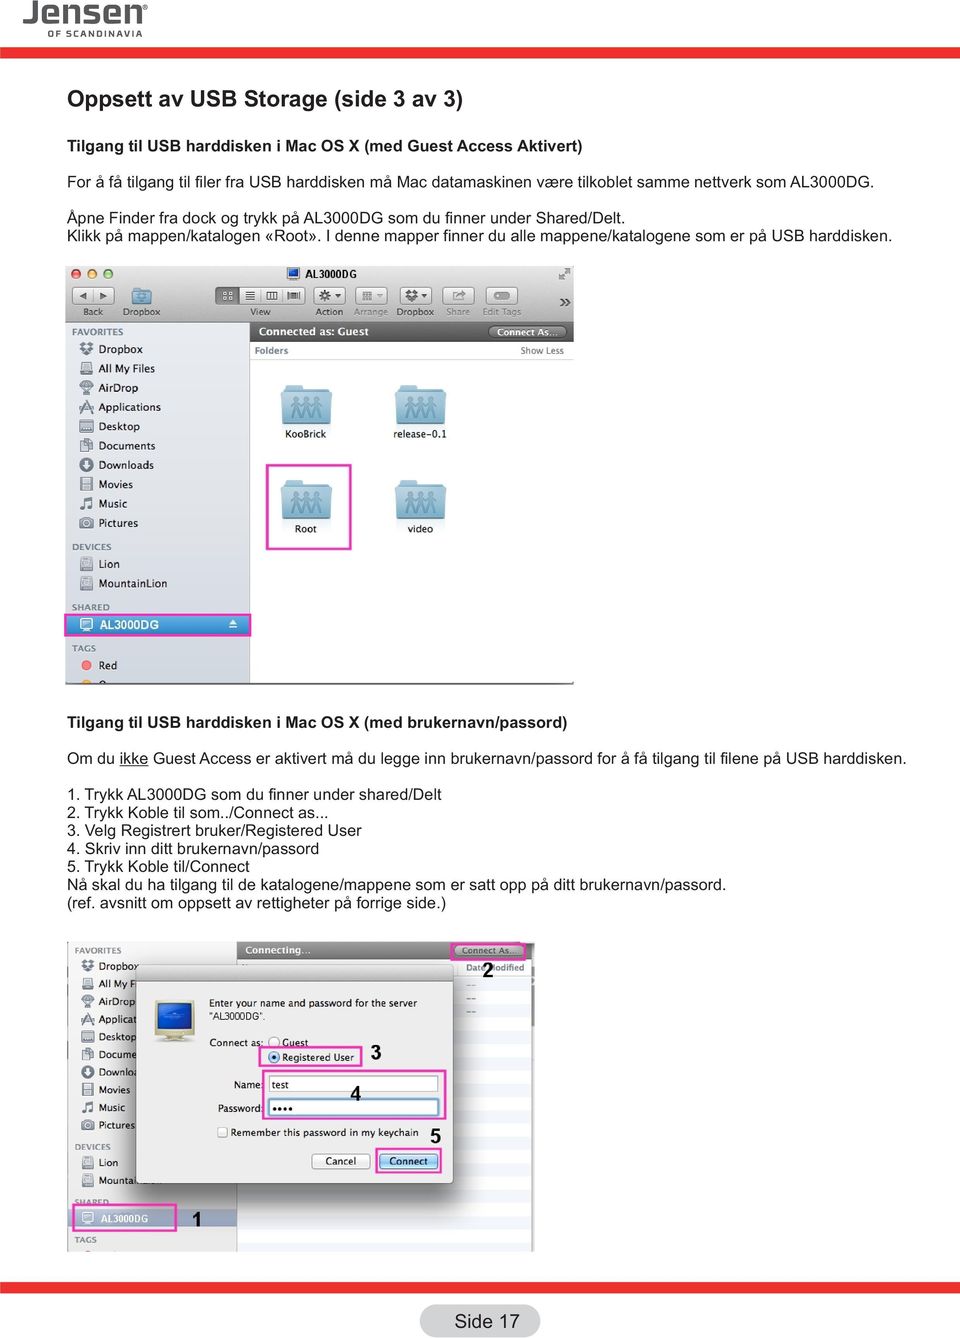 Tilgang til USB harddisken i Mac OS X (med brukernavn/passord) Om du ikke Guest Access er aktivert må du legge inn brukernavn/passord for å få tilgang til filene på USB harddisken. 1.